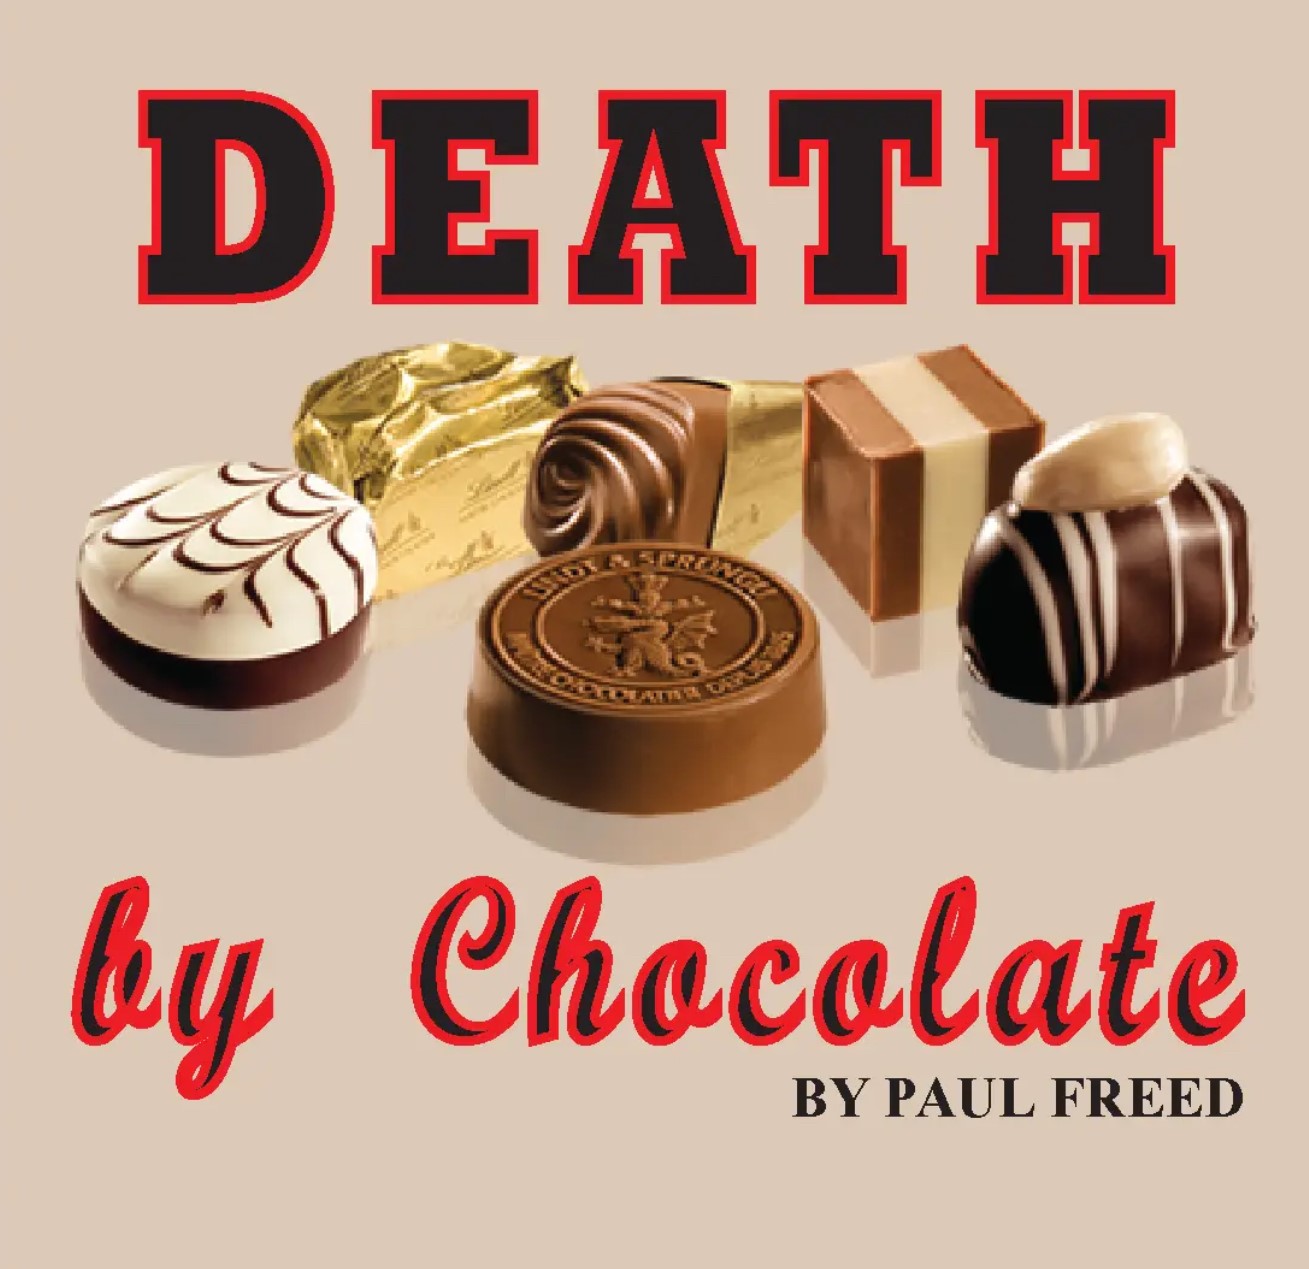 Death by Chocolate by Paul Freed on may. 12, 13:00@Area Community Theatre - Elegir asientoCompra entradas y obtén información entomahact.com 